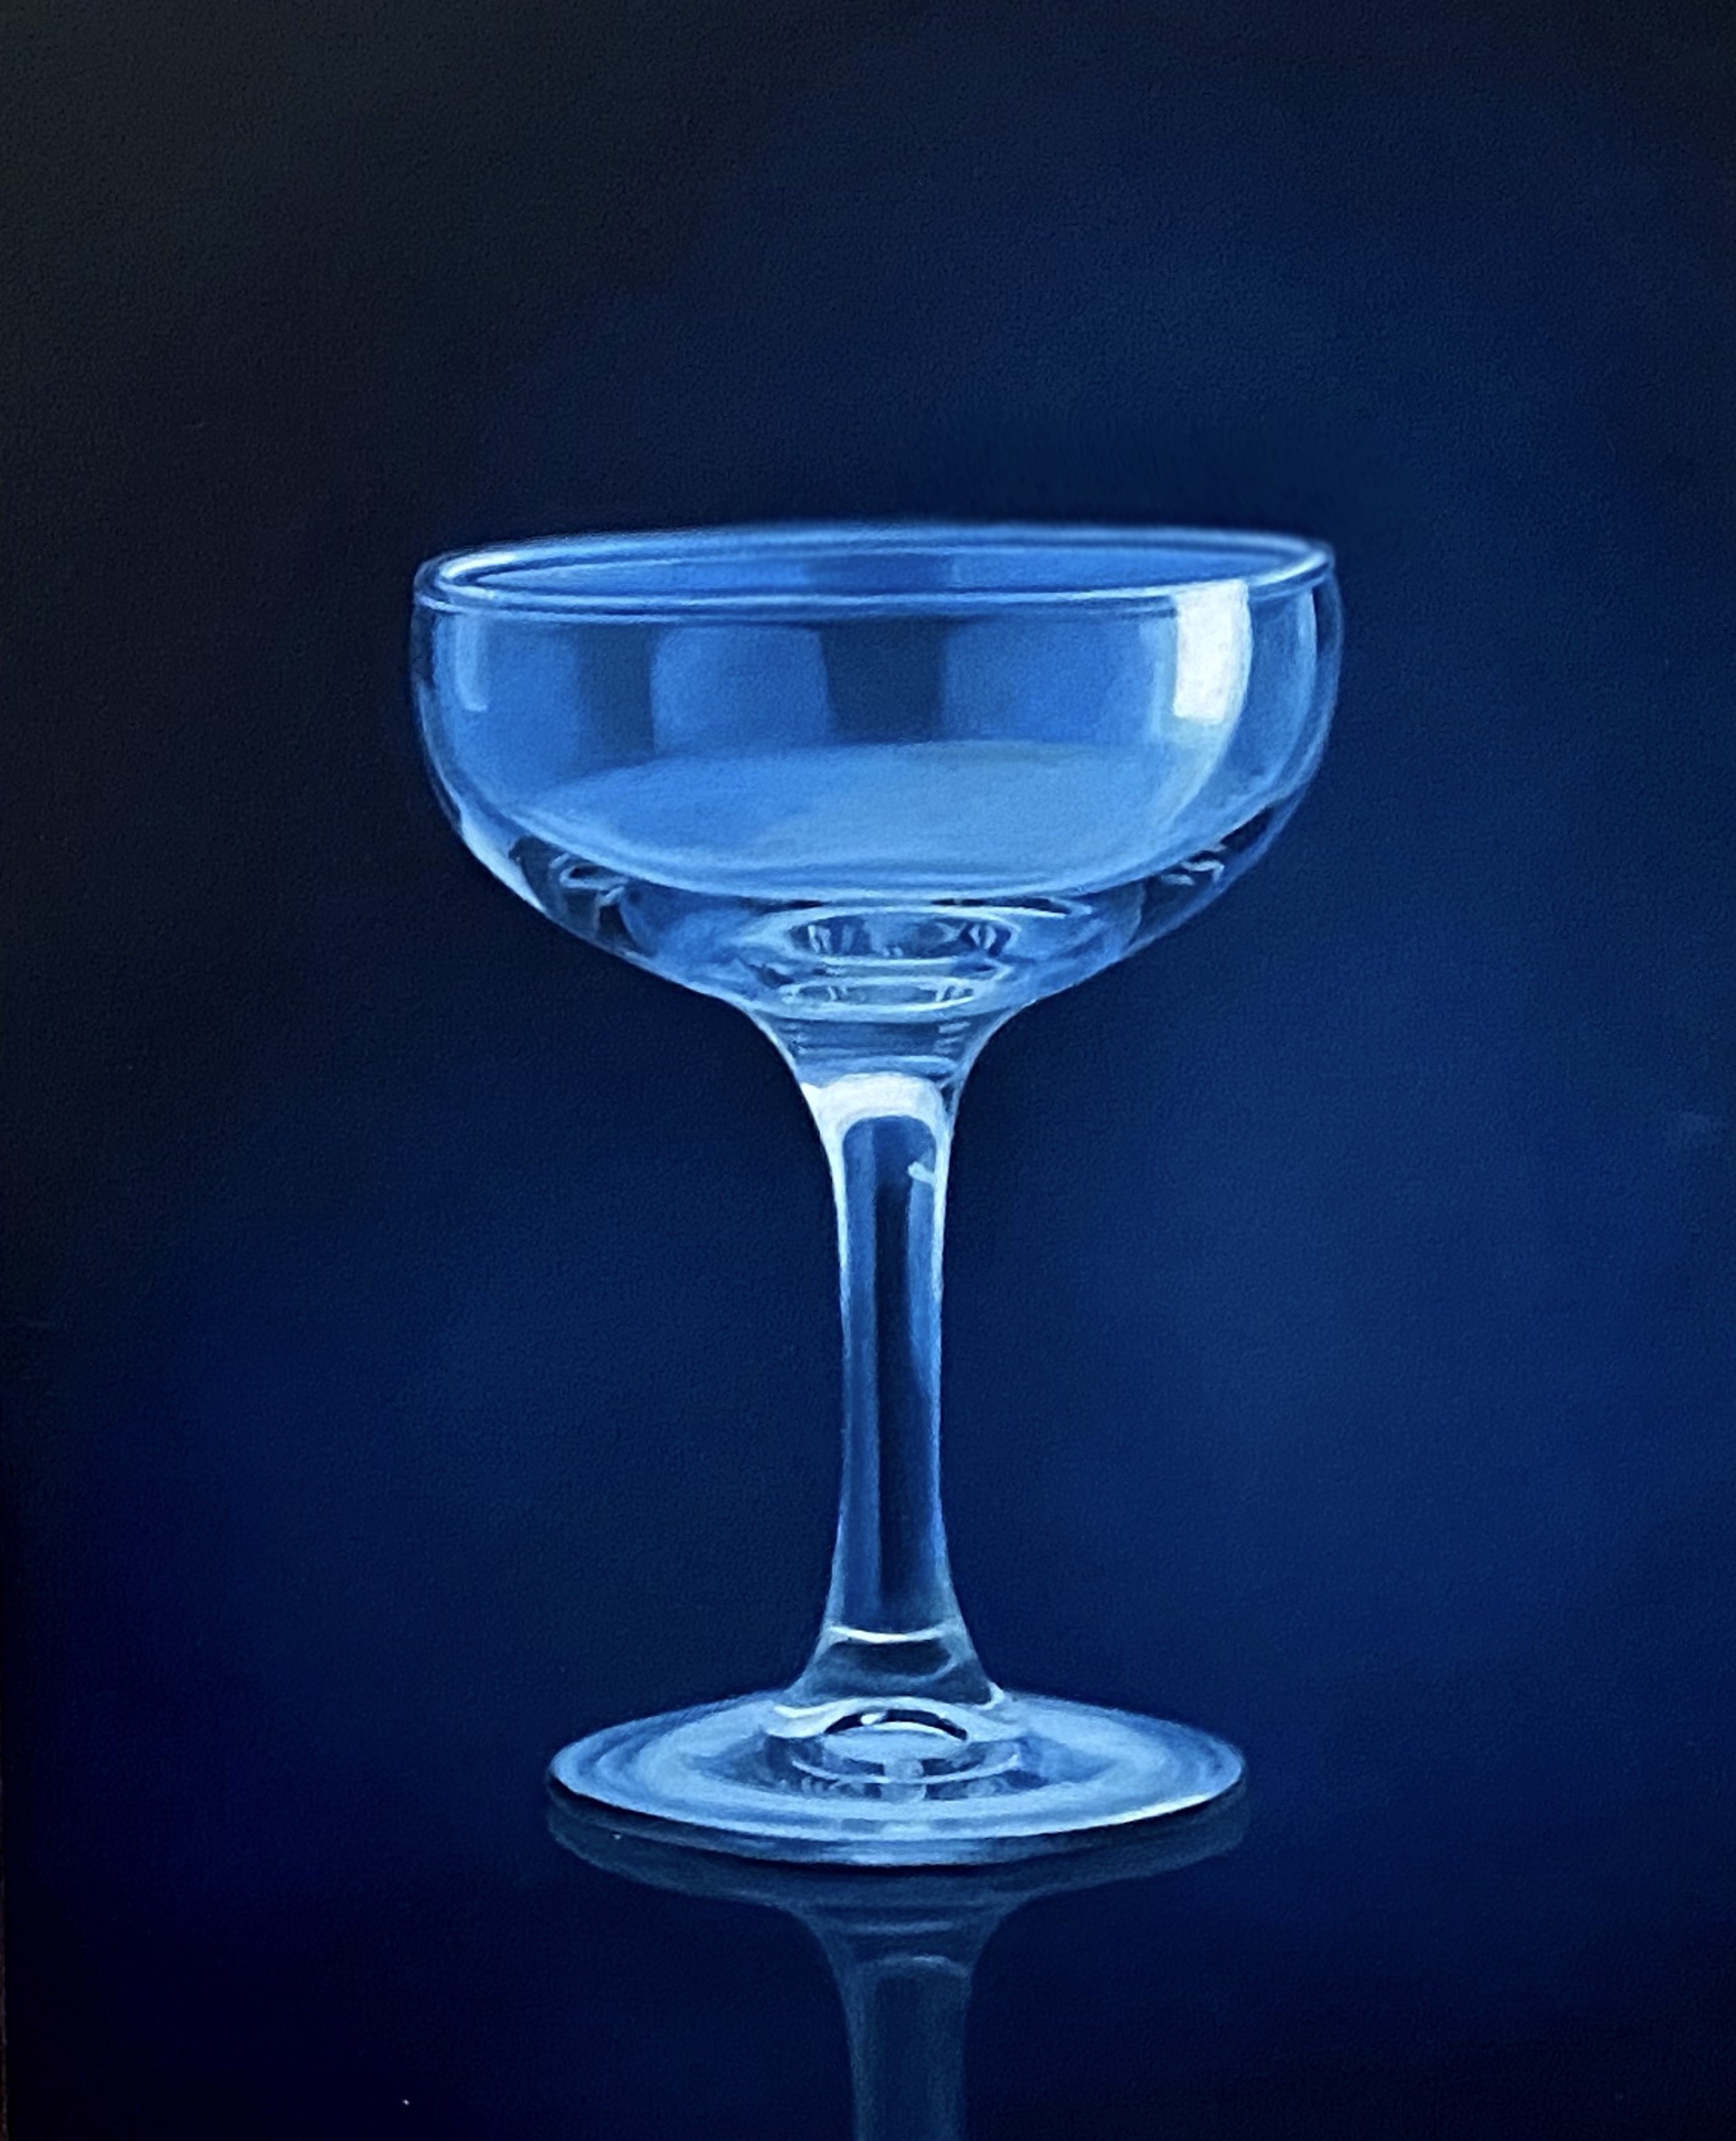 Champagne Glass II by Inkyeong Baek